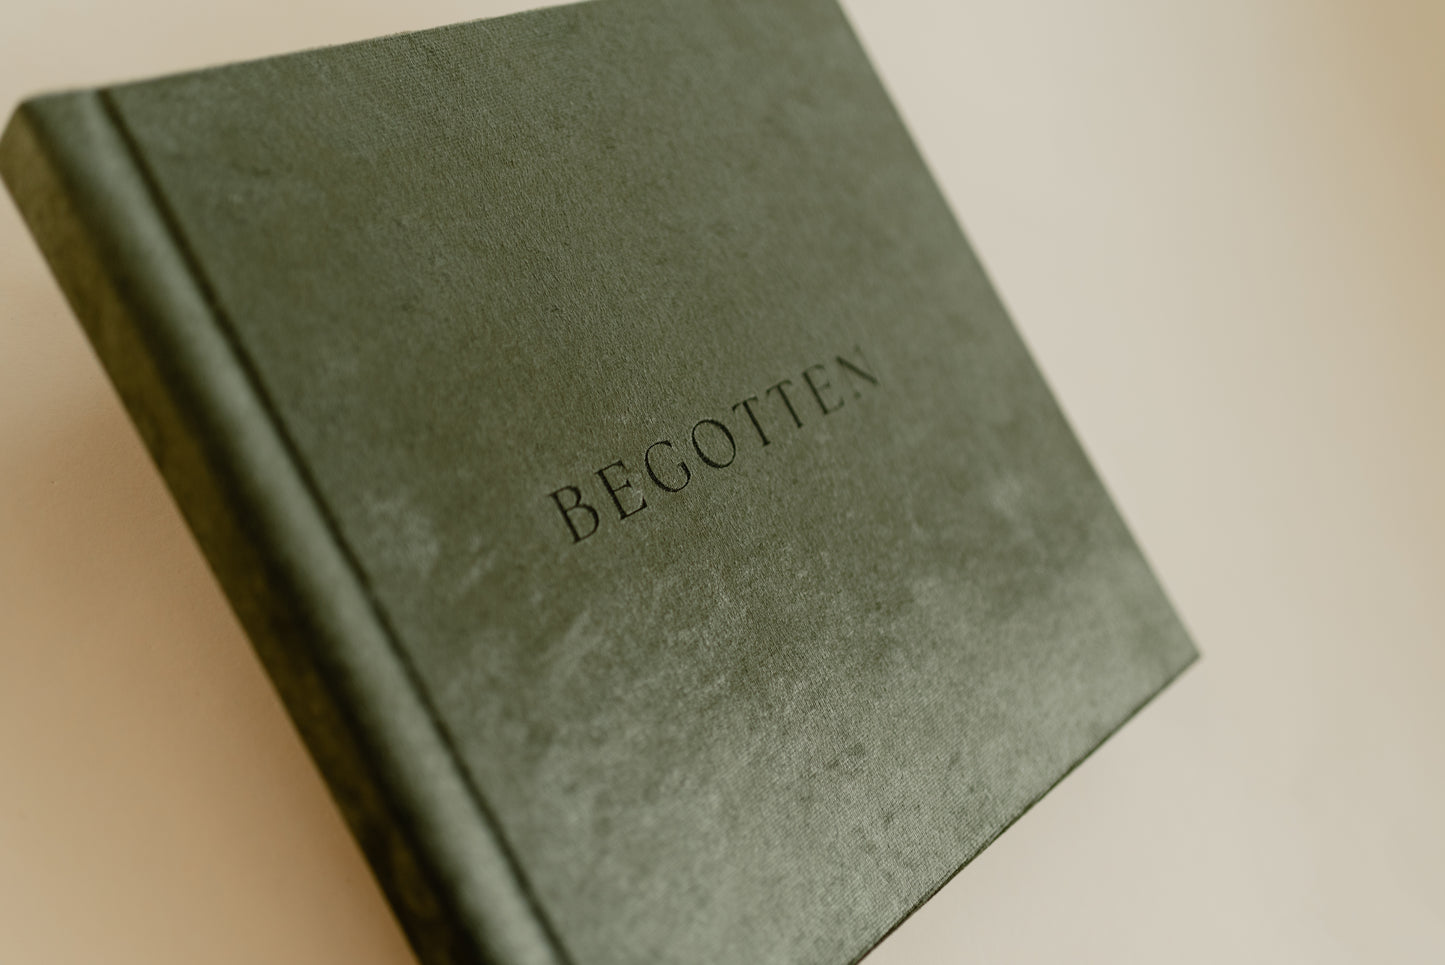 Begotten: Elegant Christmas Coffee Table Book in olive green velvet